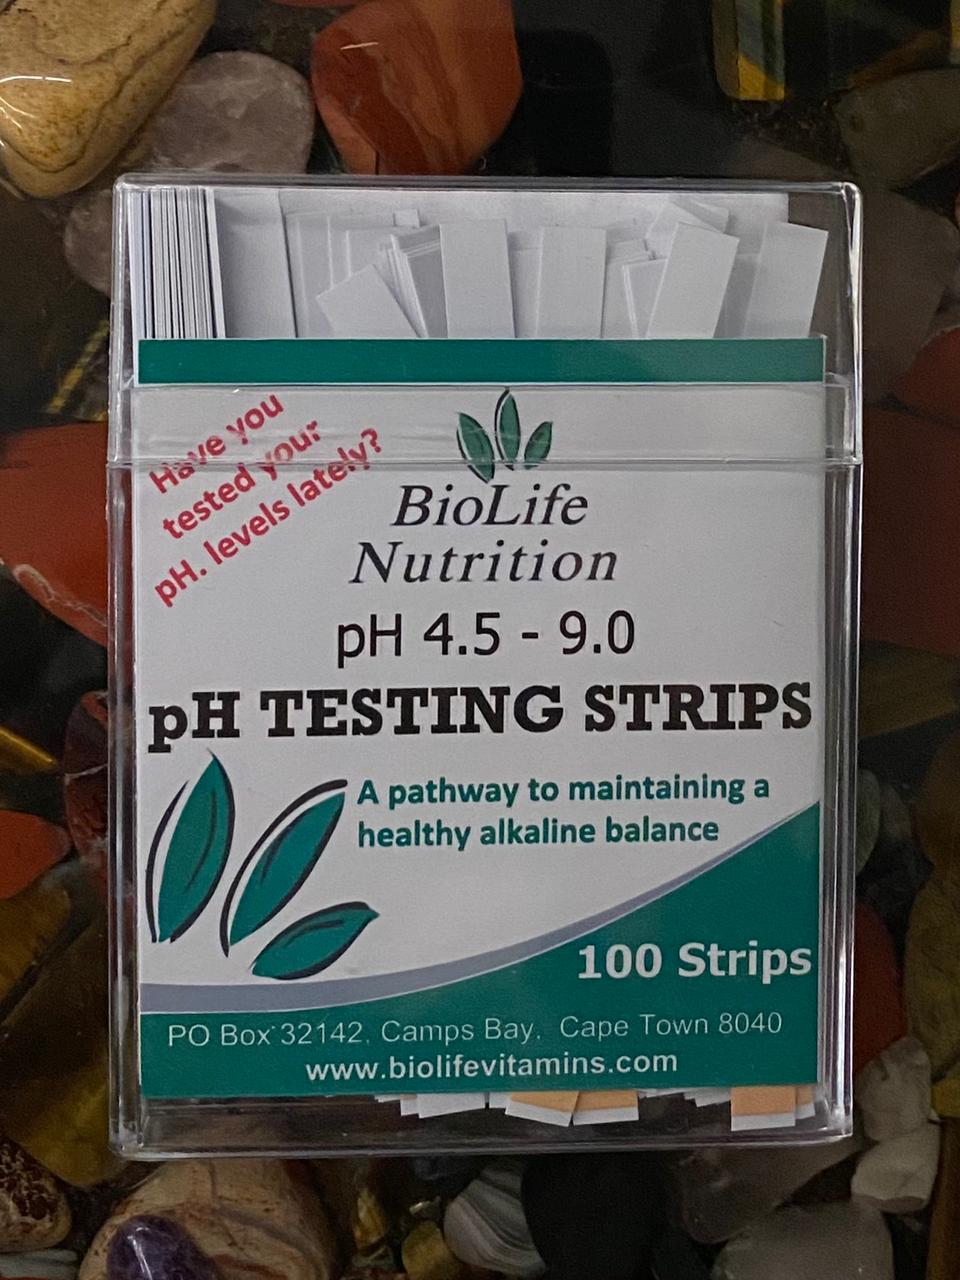 Ph testing strips